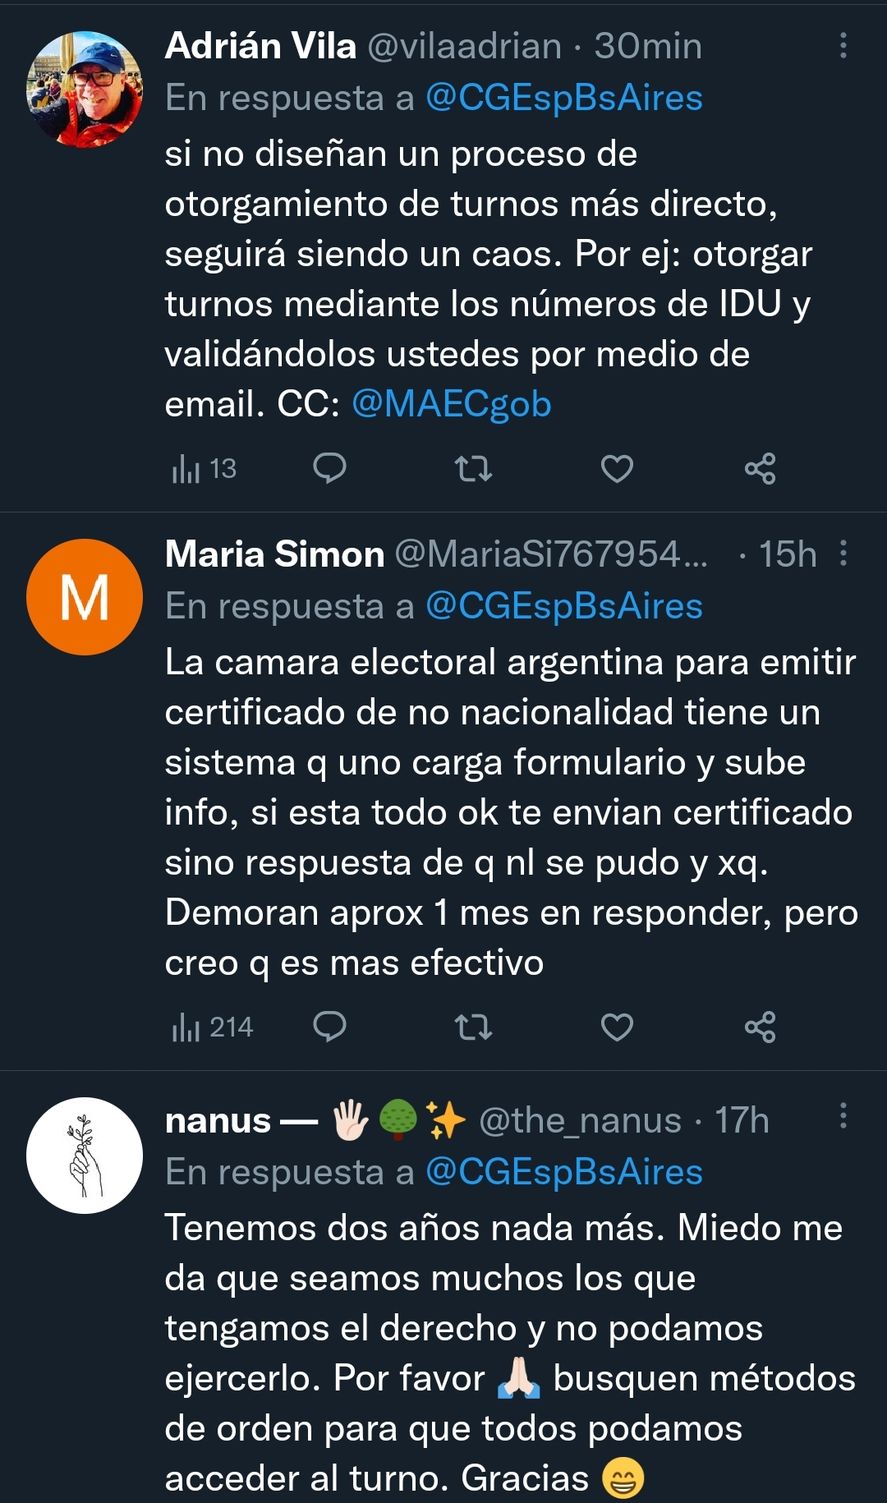 Estas son algunas de las respuestas en redes al comunicado del Consulado General de España en Buenos Aires, frente a la caída del sistema por tanto interés en sacar turno para acogerse a la nueva Ley de Nietos 